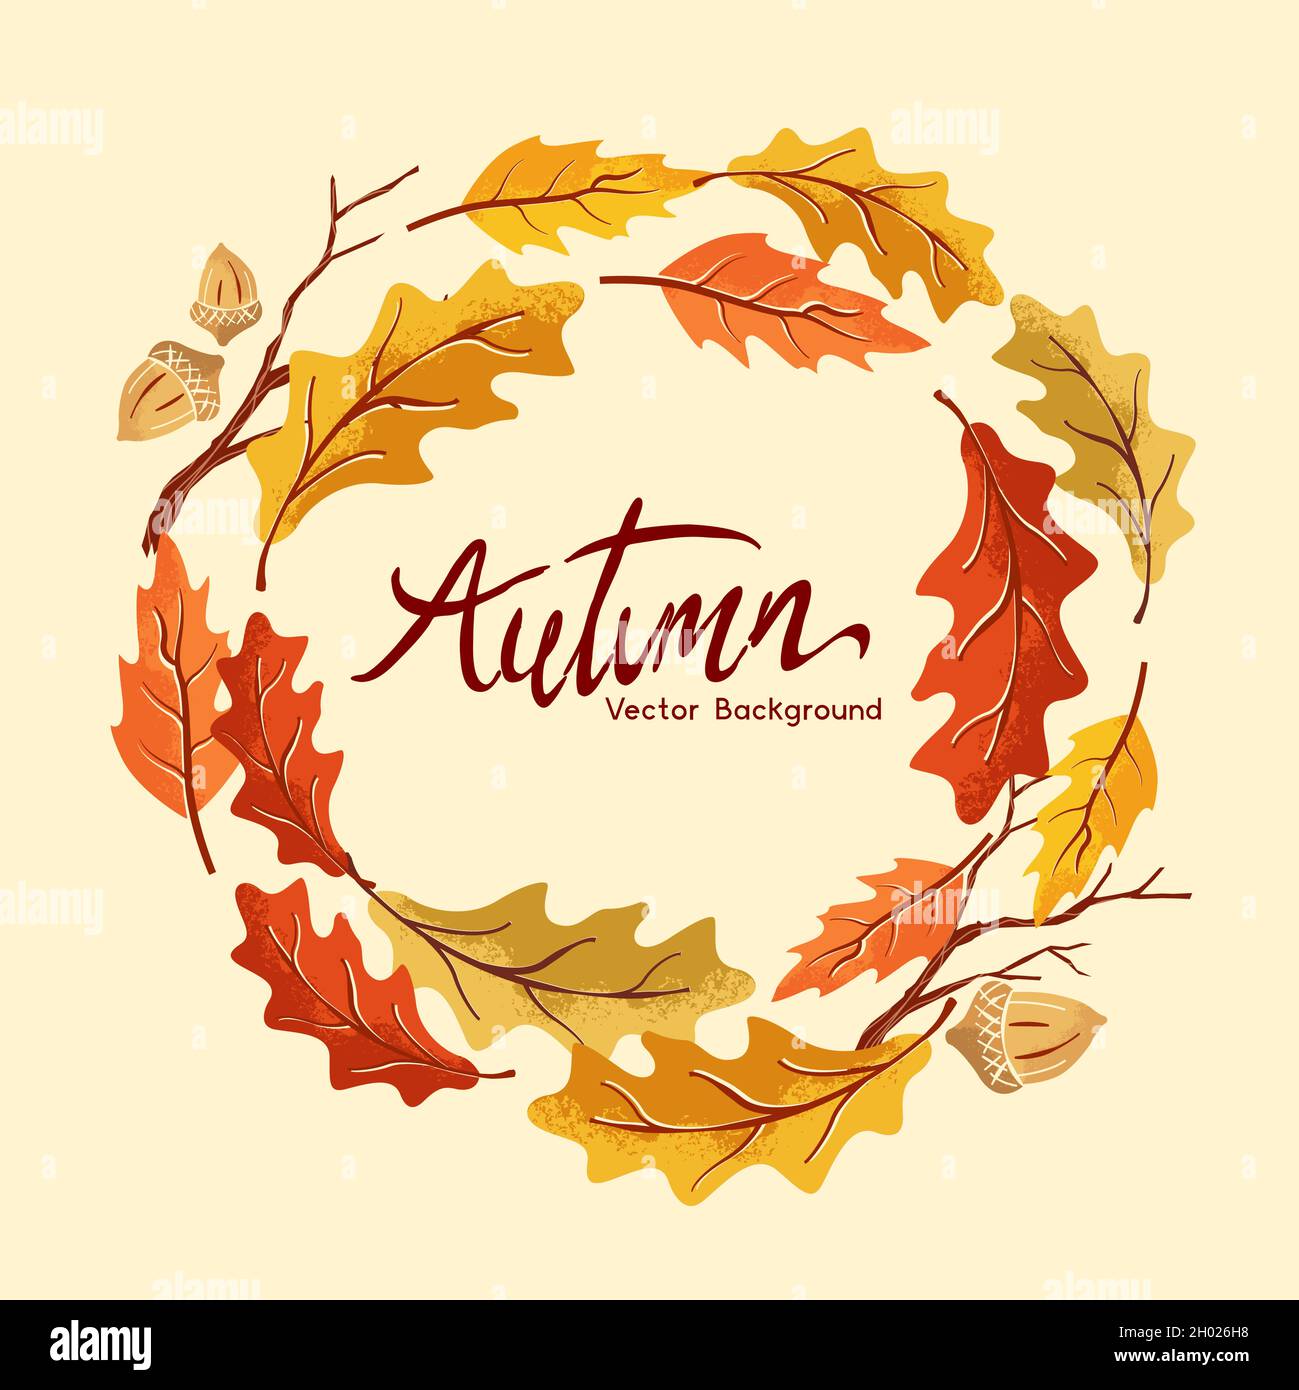 Ein Herbsterntekranz aus handgefertigten goldenen Blättern. Vektorgrafik. Stock Vektor